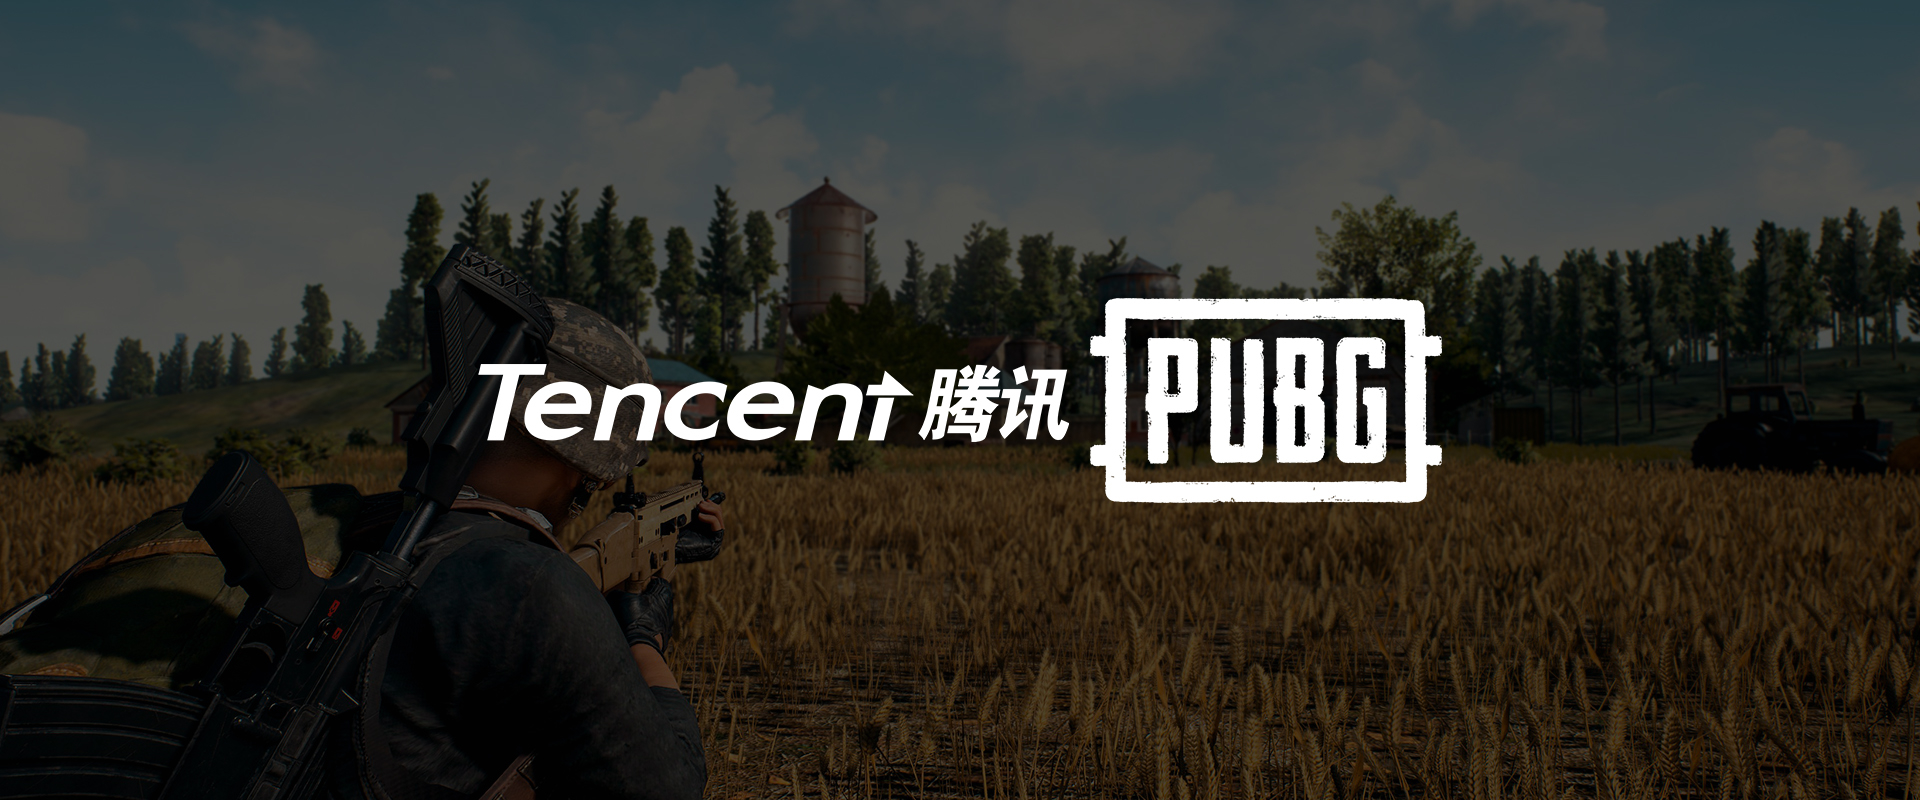 Lehet, hogy a Tencent megmozgatja azokat a kínai köveket, amiket a PUBG Corp. nem tudott?